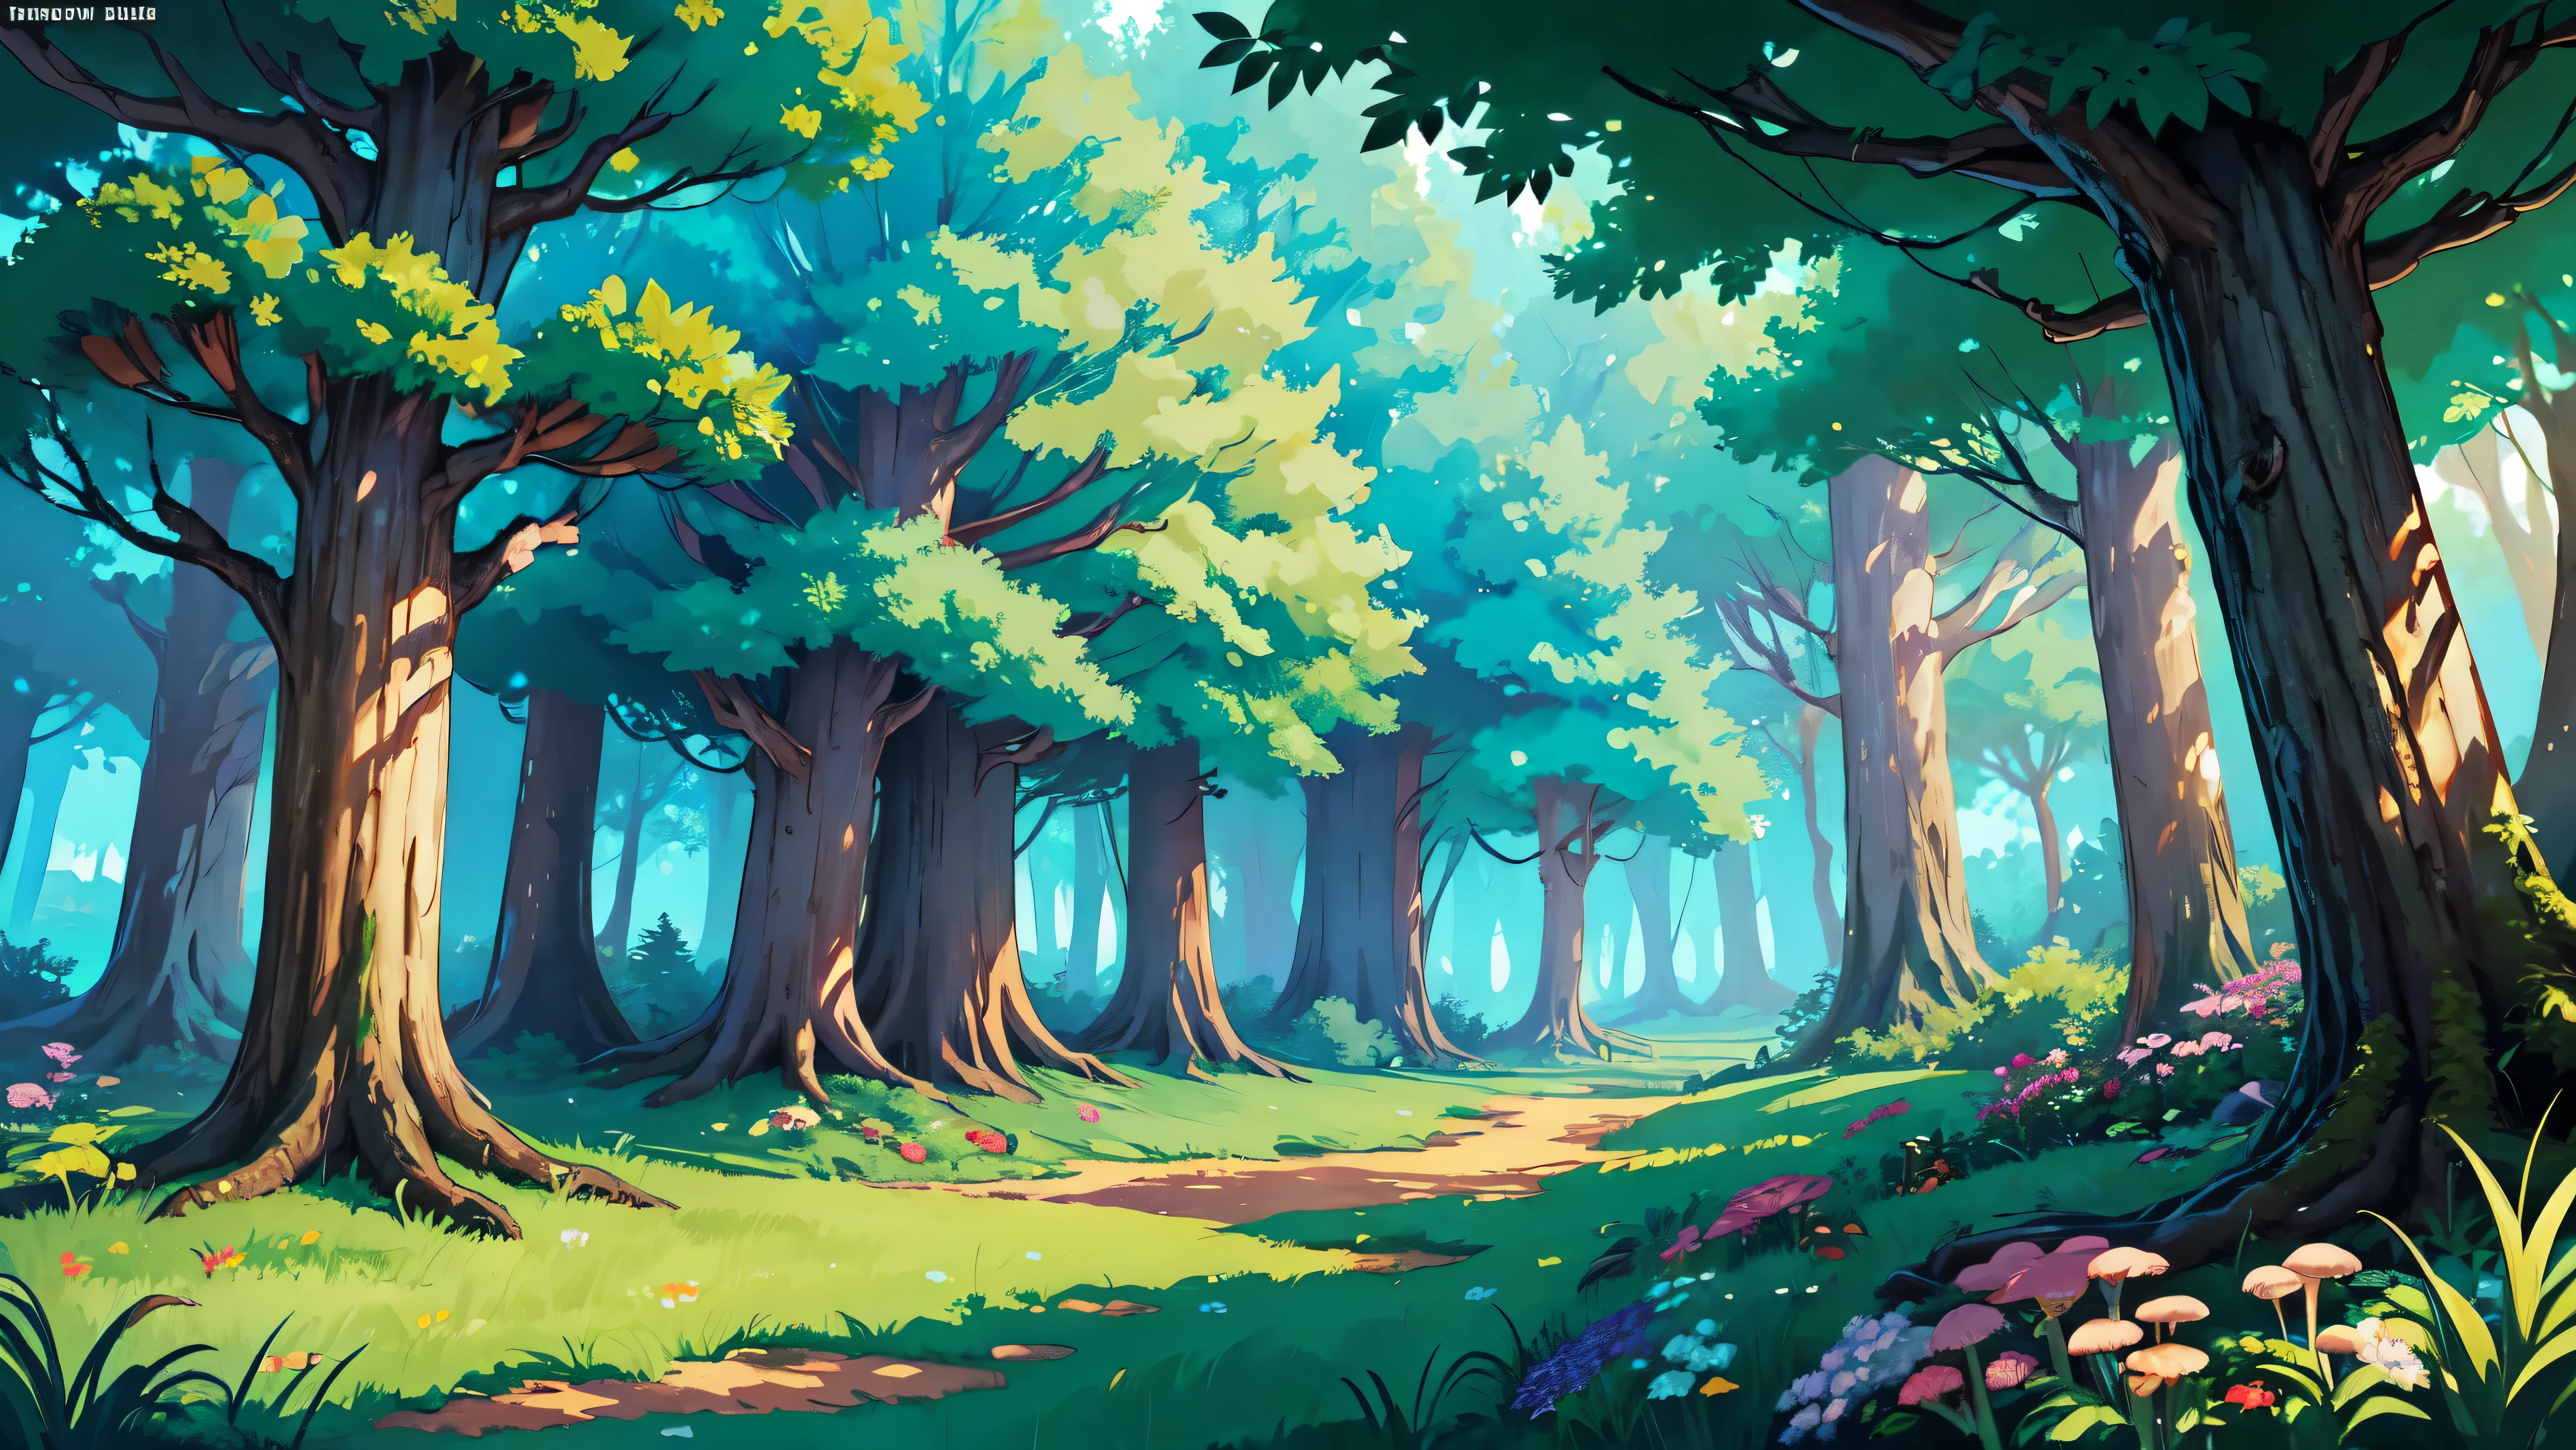 ((สว่าง)), Cartoon beautiful fantasy fairy ป่าภายใน with trails and trees on a sunny day, พืชป่า, เห็ดนางฟ้าที่สวยงาม, ดอกไม้ที่สวยงามในป่า, รายละเอียด, รายละเอียด background artwork masterpiece, Mobile พื้นหลังของเกม, พื้นหลังของเกม, พื้นหลังศิลปะเกม 2 D, พื้นหลังป่า, scenery art รายละเอียด, งานศิลปะภูมิทัศน์, ศิลปะเกมมือถือ, 2d พื้นหลังของเกม, อะนิเมะพื้นหลังศิลปะ, ภูมิทัศน์การถางป่า, อะนิเมะภูมิทัศน์ชนบท, ป่าภายใน, elf พื้นหลังป่า, การตั้งค่าป่า, รายละเอียดเกมศิลปะ, 4เค